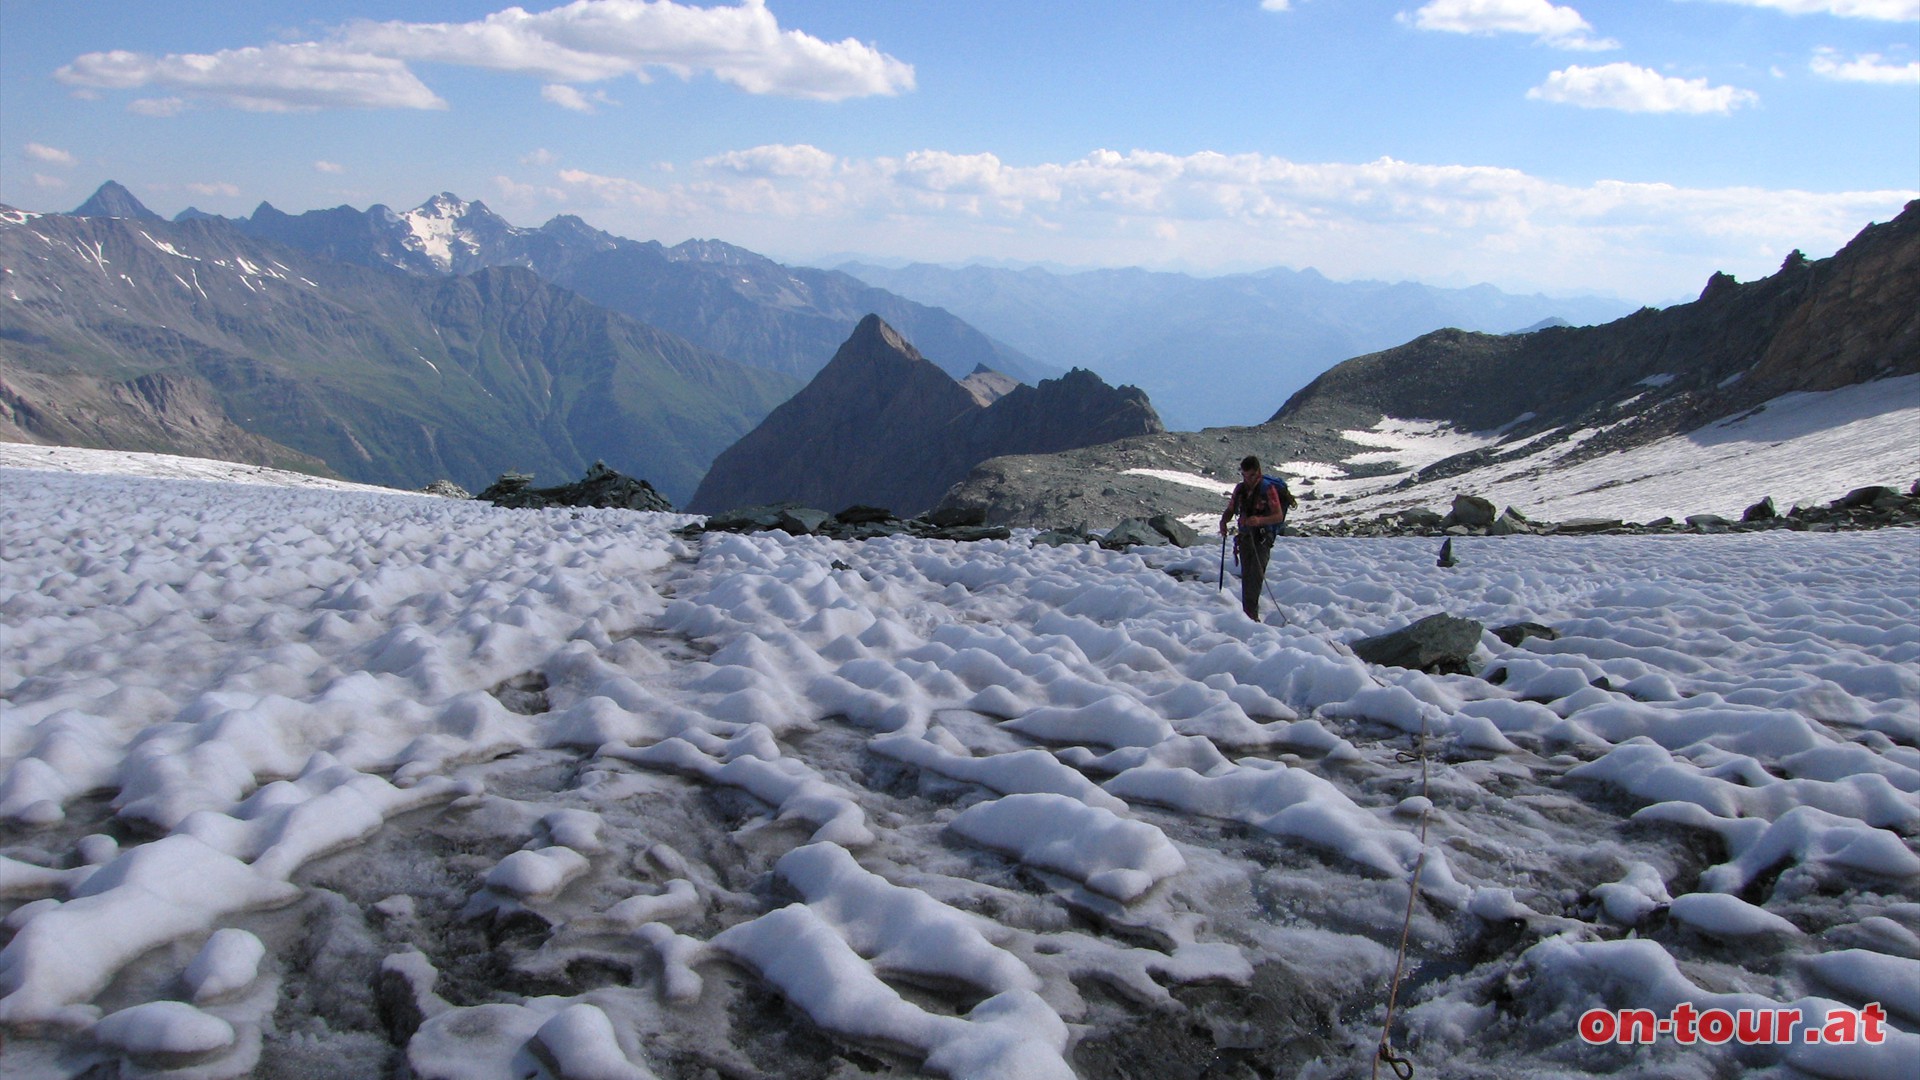 Gletscherspalten können eine Breite von mehreren Metern und Tiefen bis über 20 Meter erreichen. 
Selbst bei einer dickeren Schneedecke über dem Gletscher sollte auf Seil, Pickel, Steigeisen und Gurt nicht verzichtet werden. 